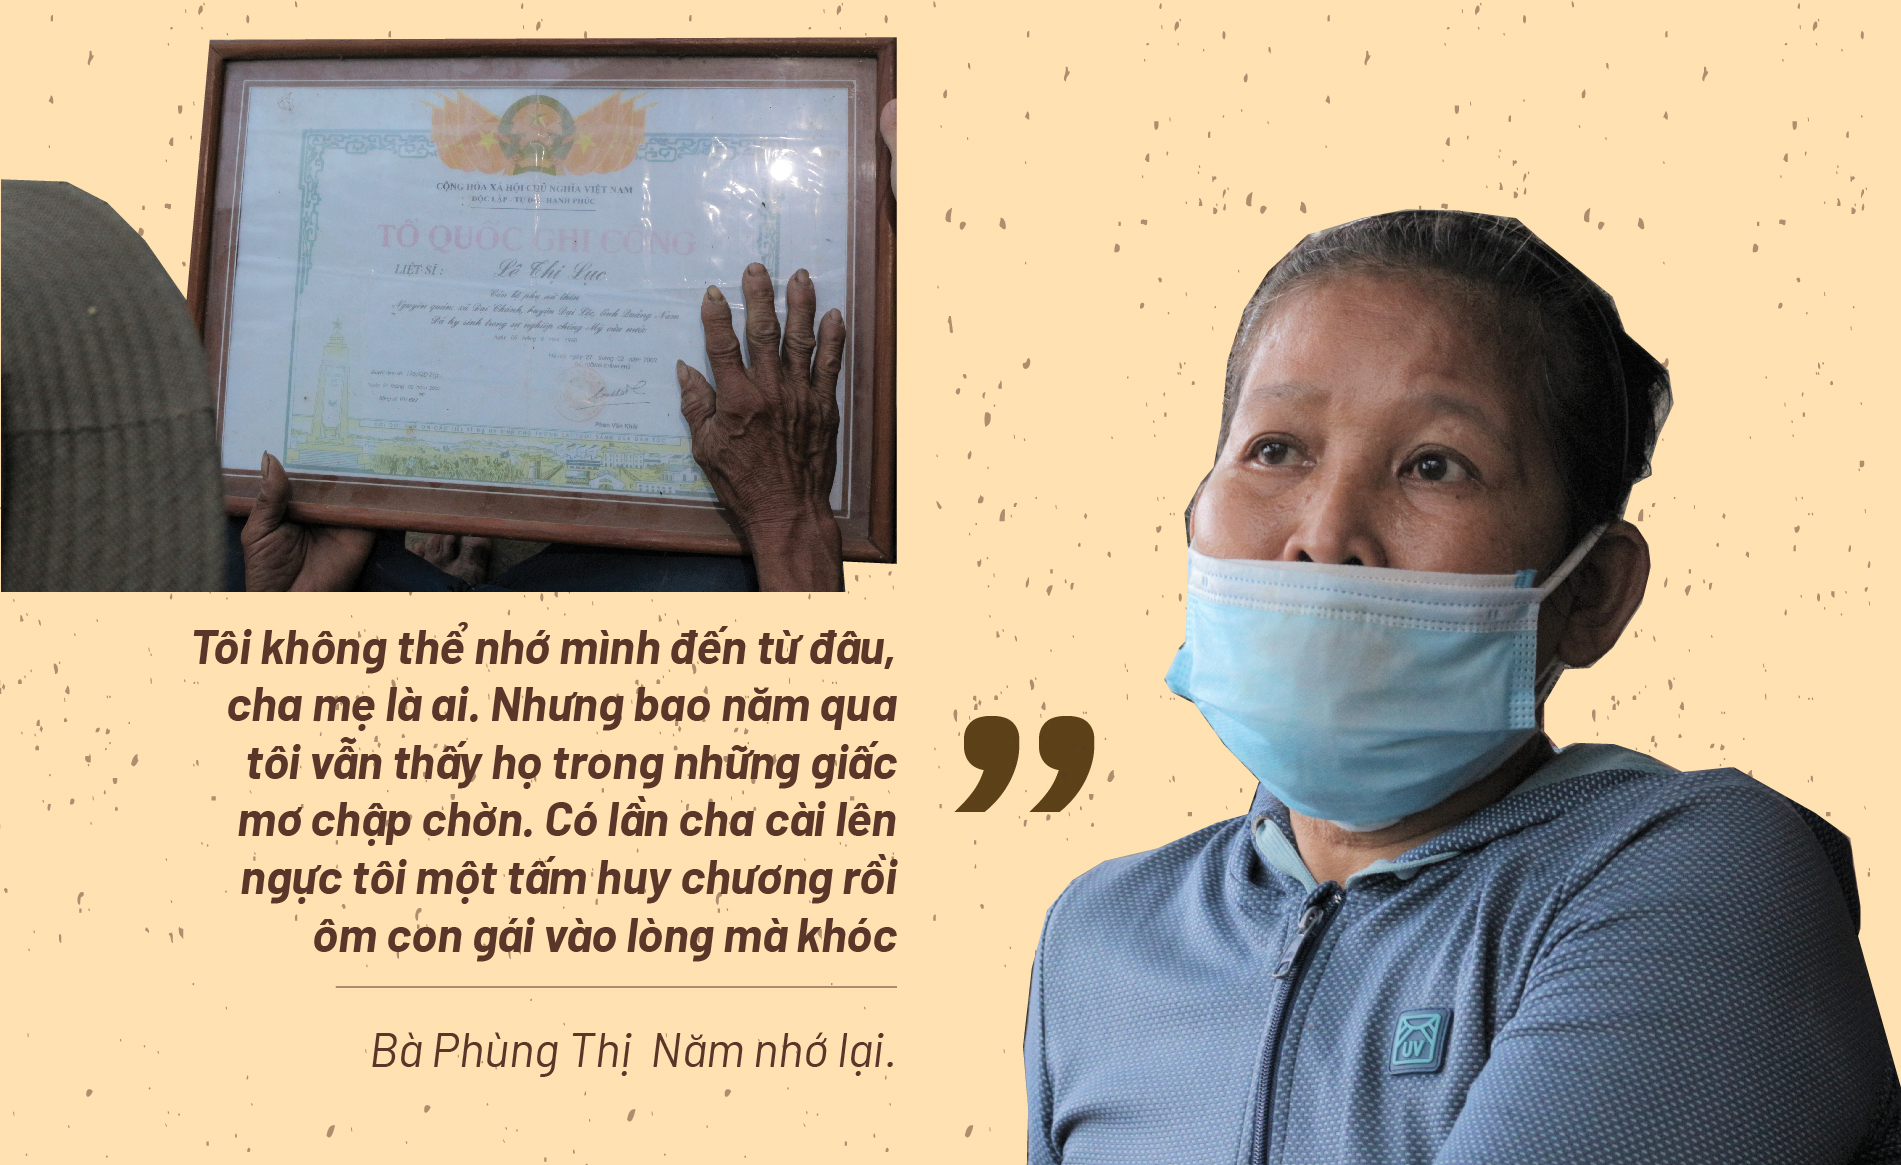 Hành trình gần 50 năm đi tìm em gái sau chiến tranh ở Quảng Nam - ảnh 2